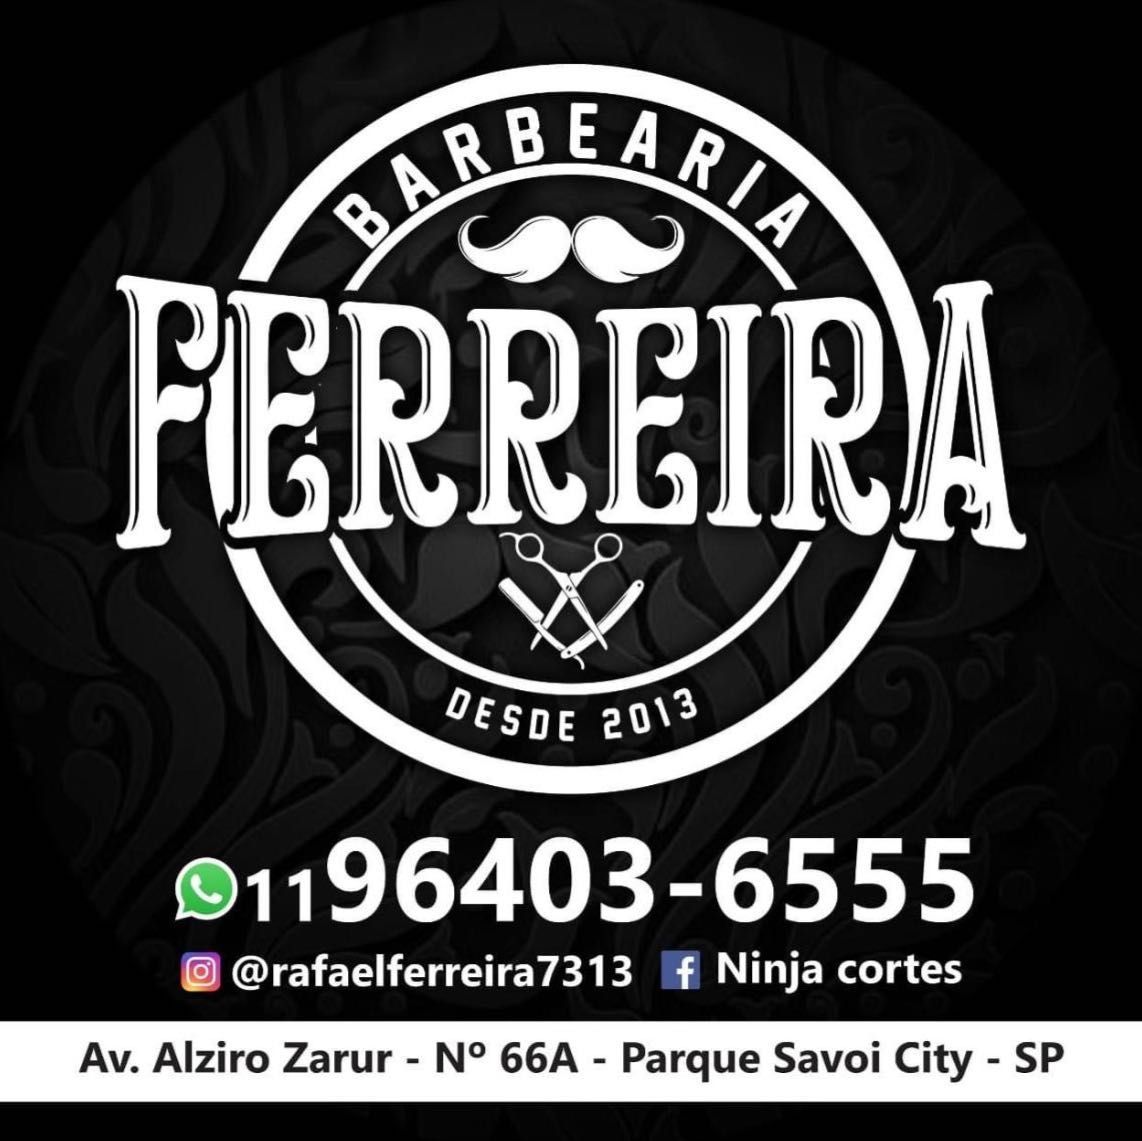 Barbearia Ferreira, Avenida Alziro Zarur, 66, 03570-000, São Paulo